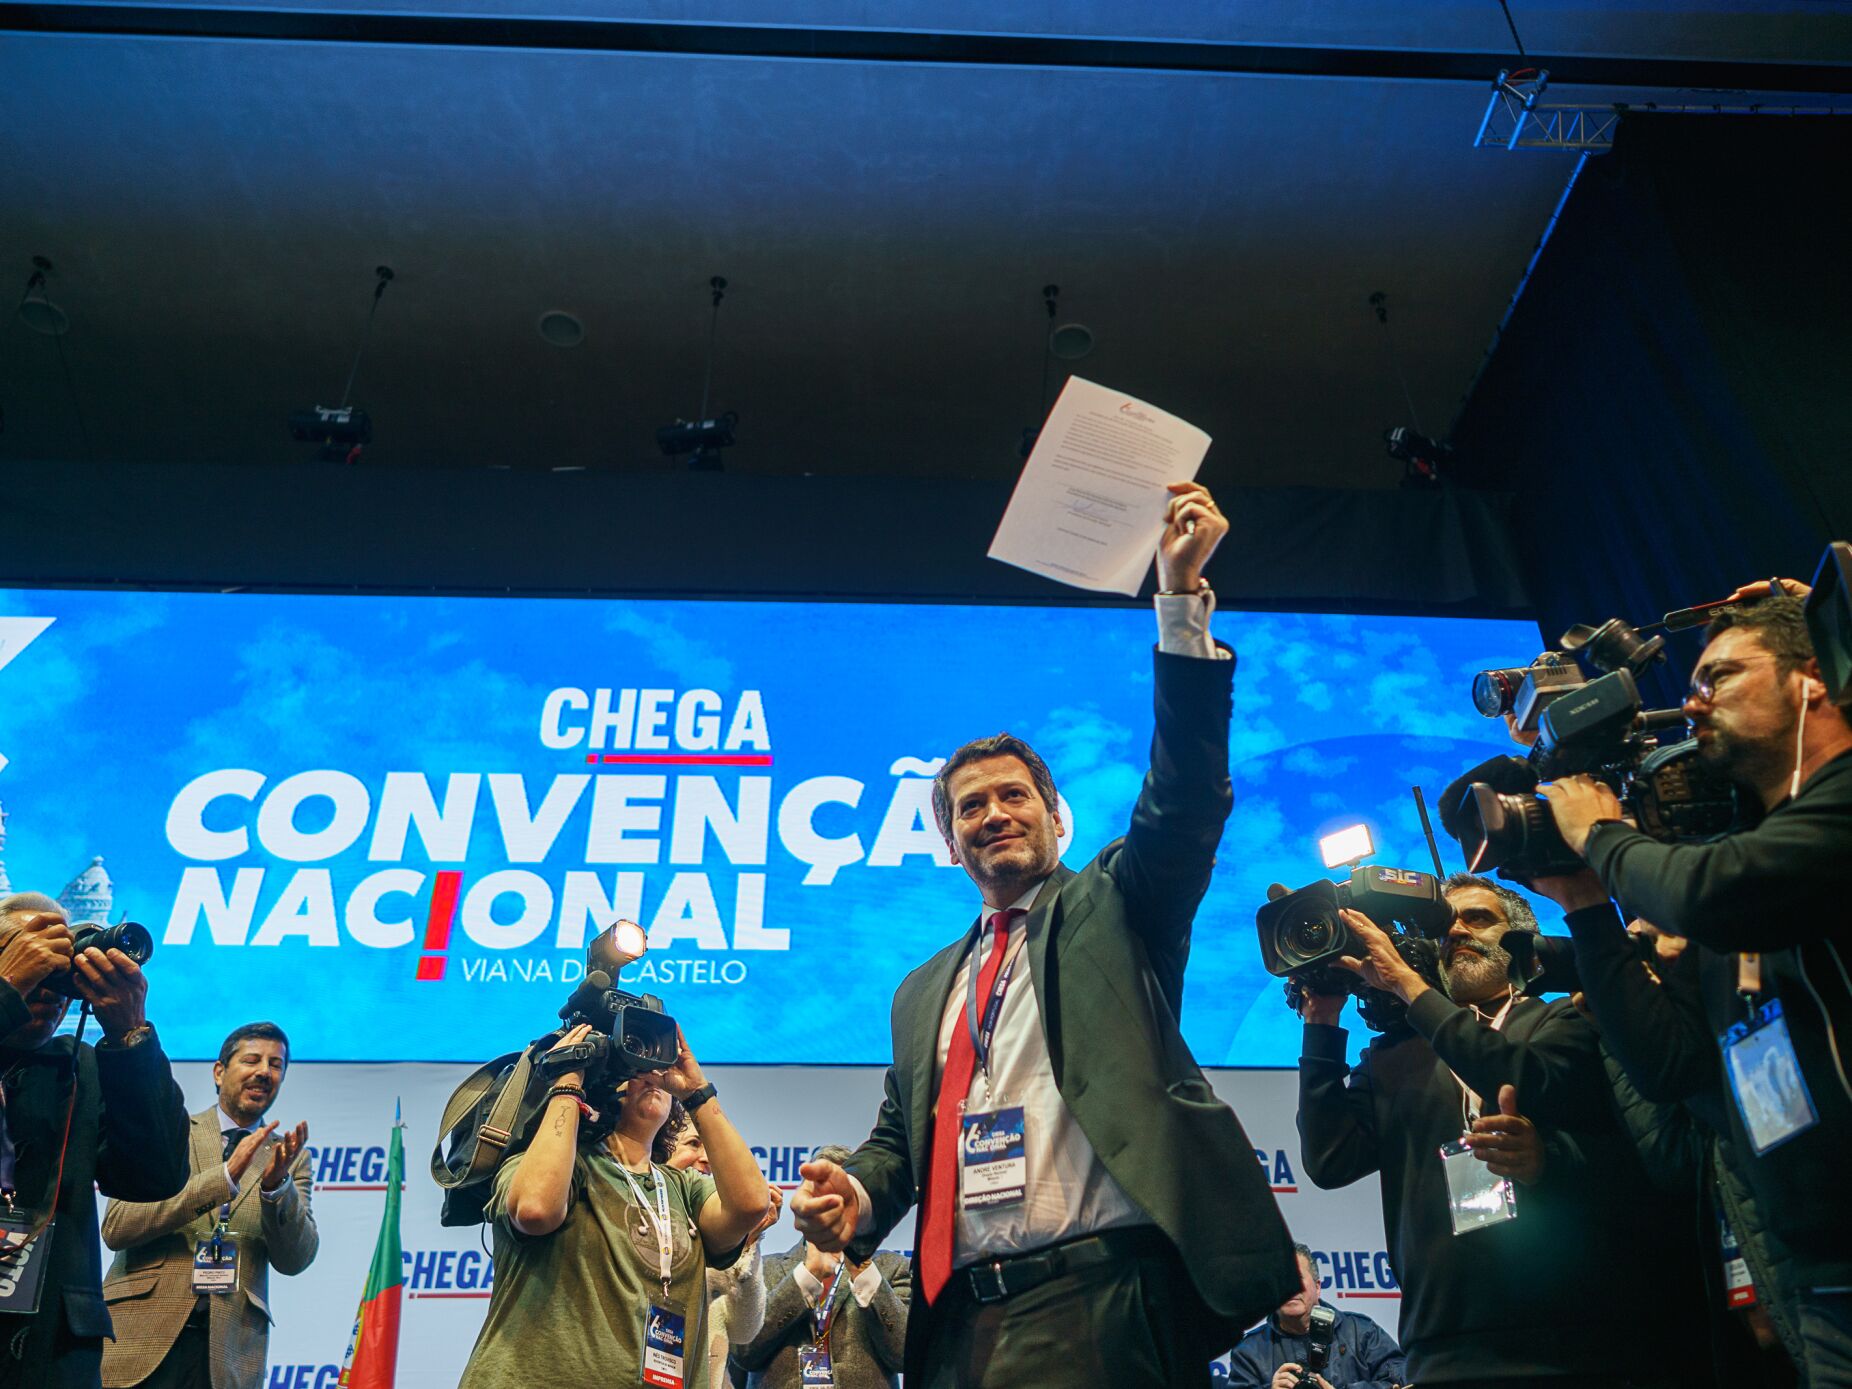 Chega. Direção Nacional de André Ventura eleita com 90,2% dos votos